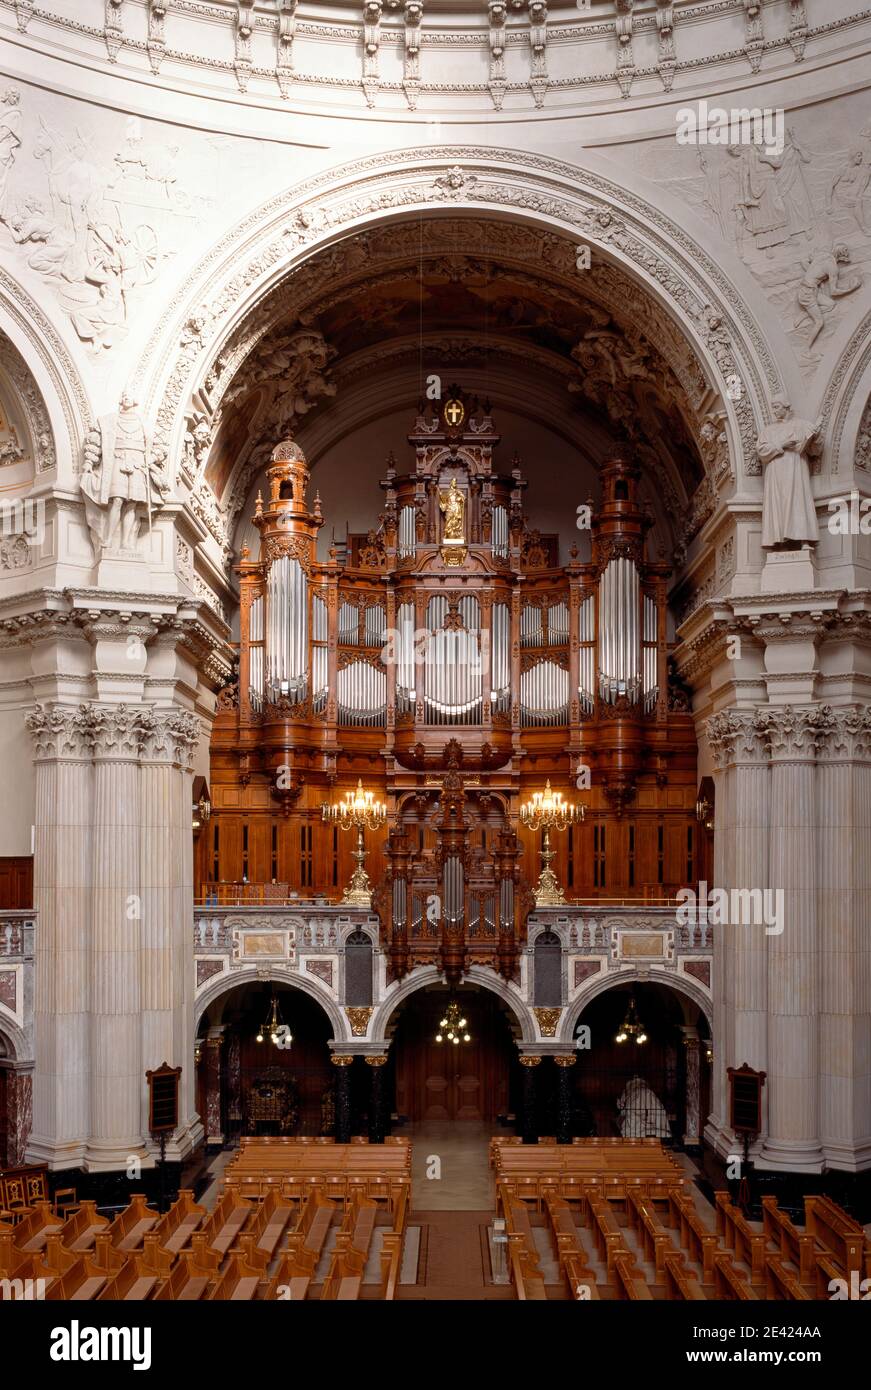 Orgel von Wilhelm Sauer Foto de stock